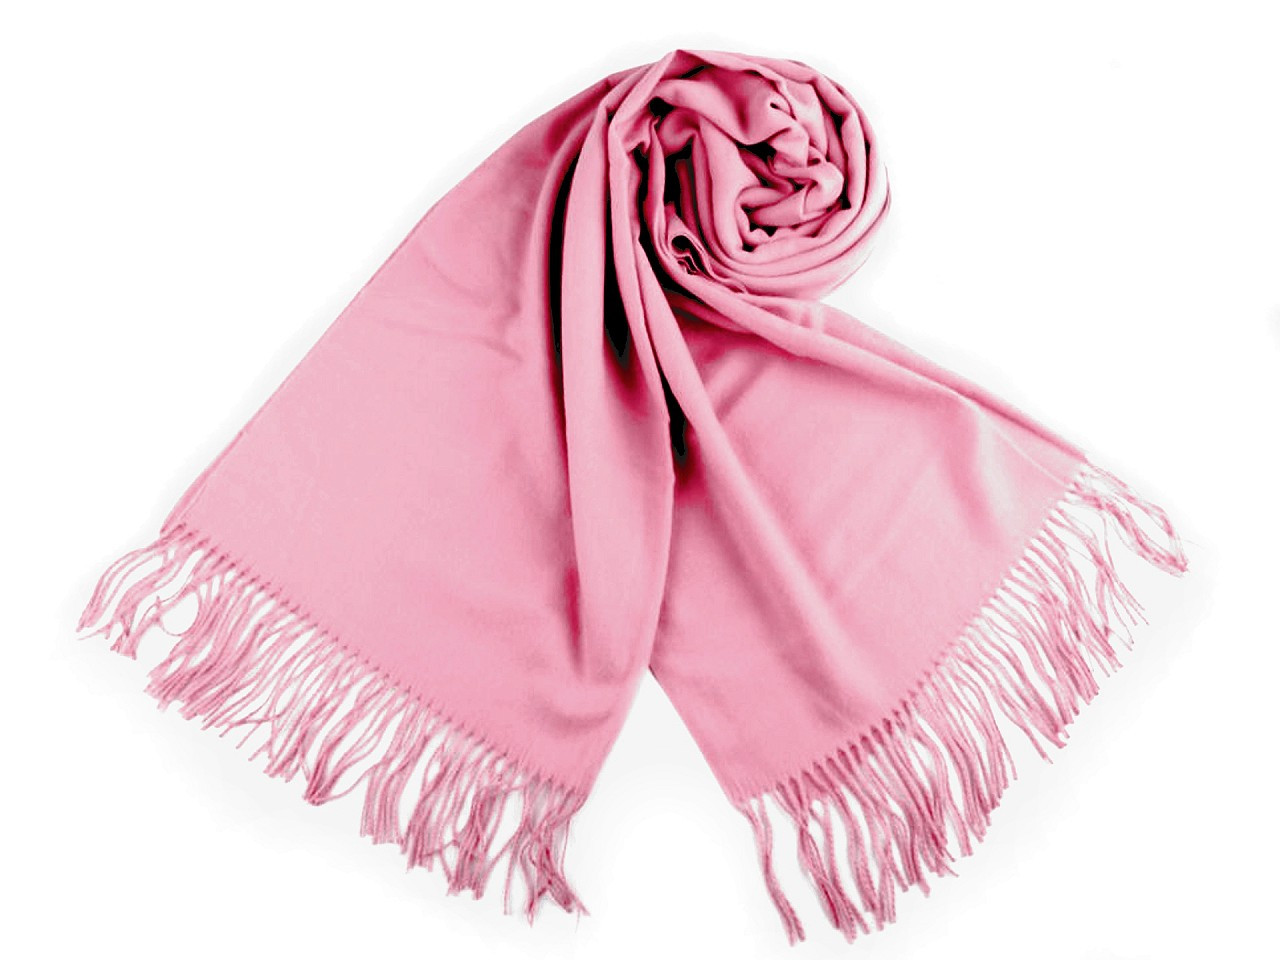 Šátek / šála typu pashmina s třásněmi 65x180 cm, barva 31 růžová střední